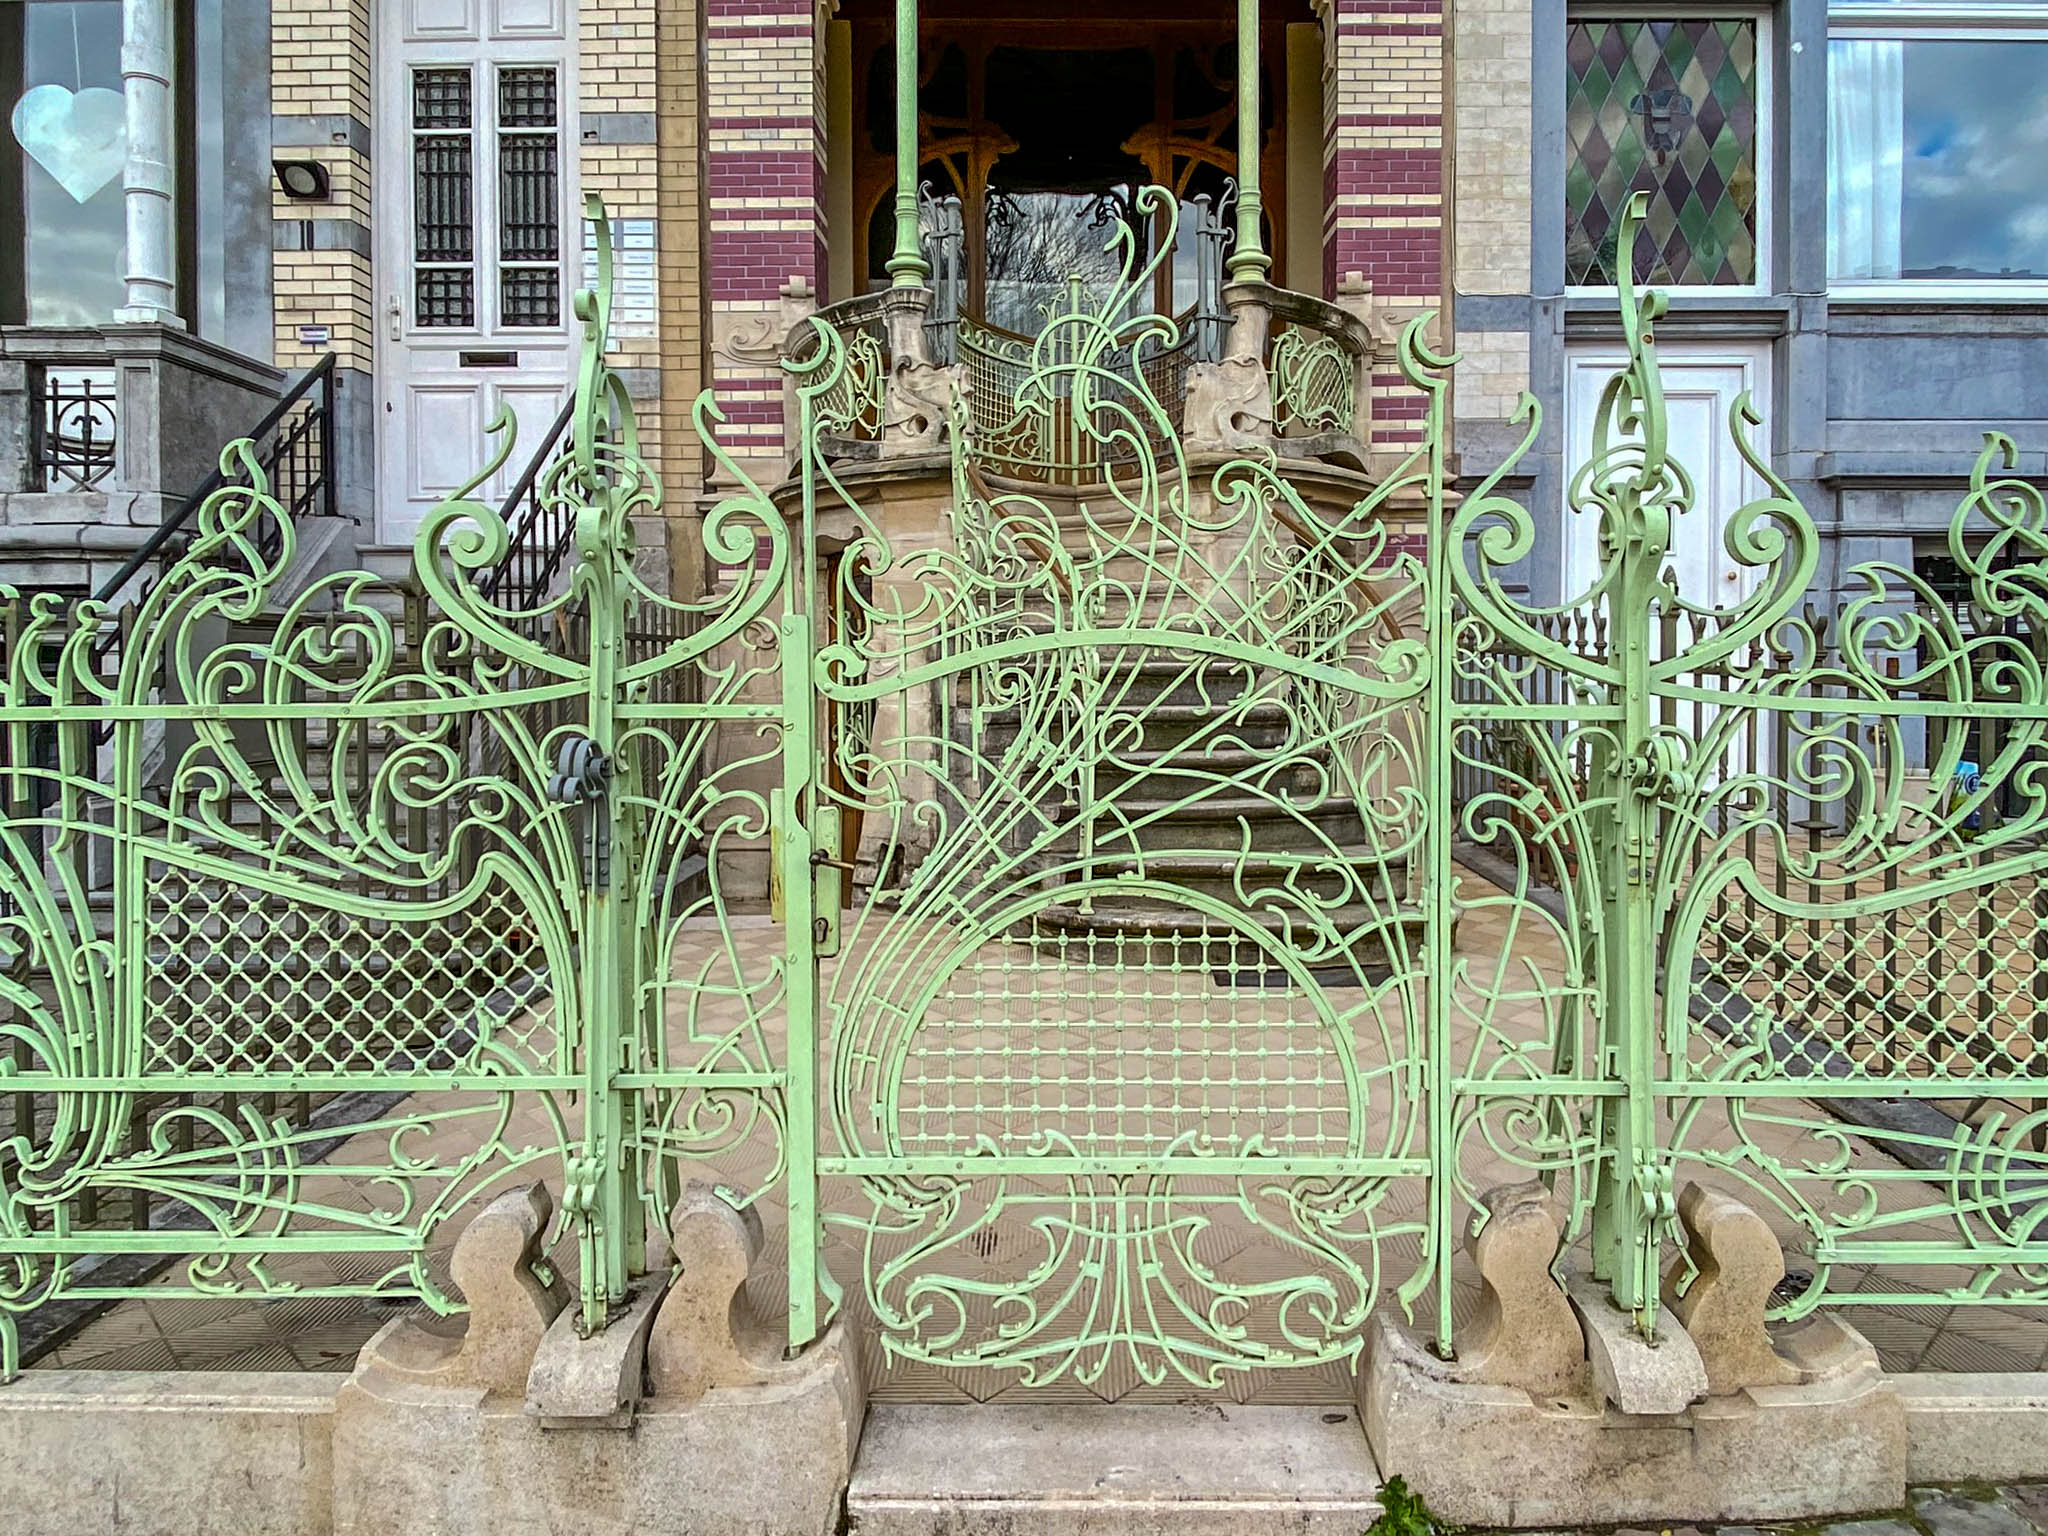 Maison Saint-Cyr, 1901-1903. Architekt: Gustave Strauven